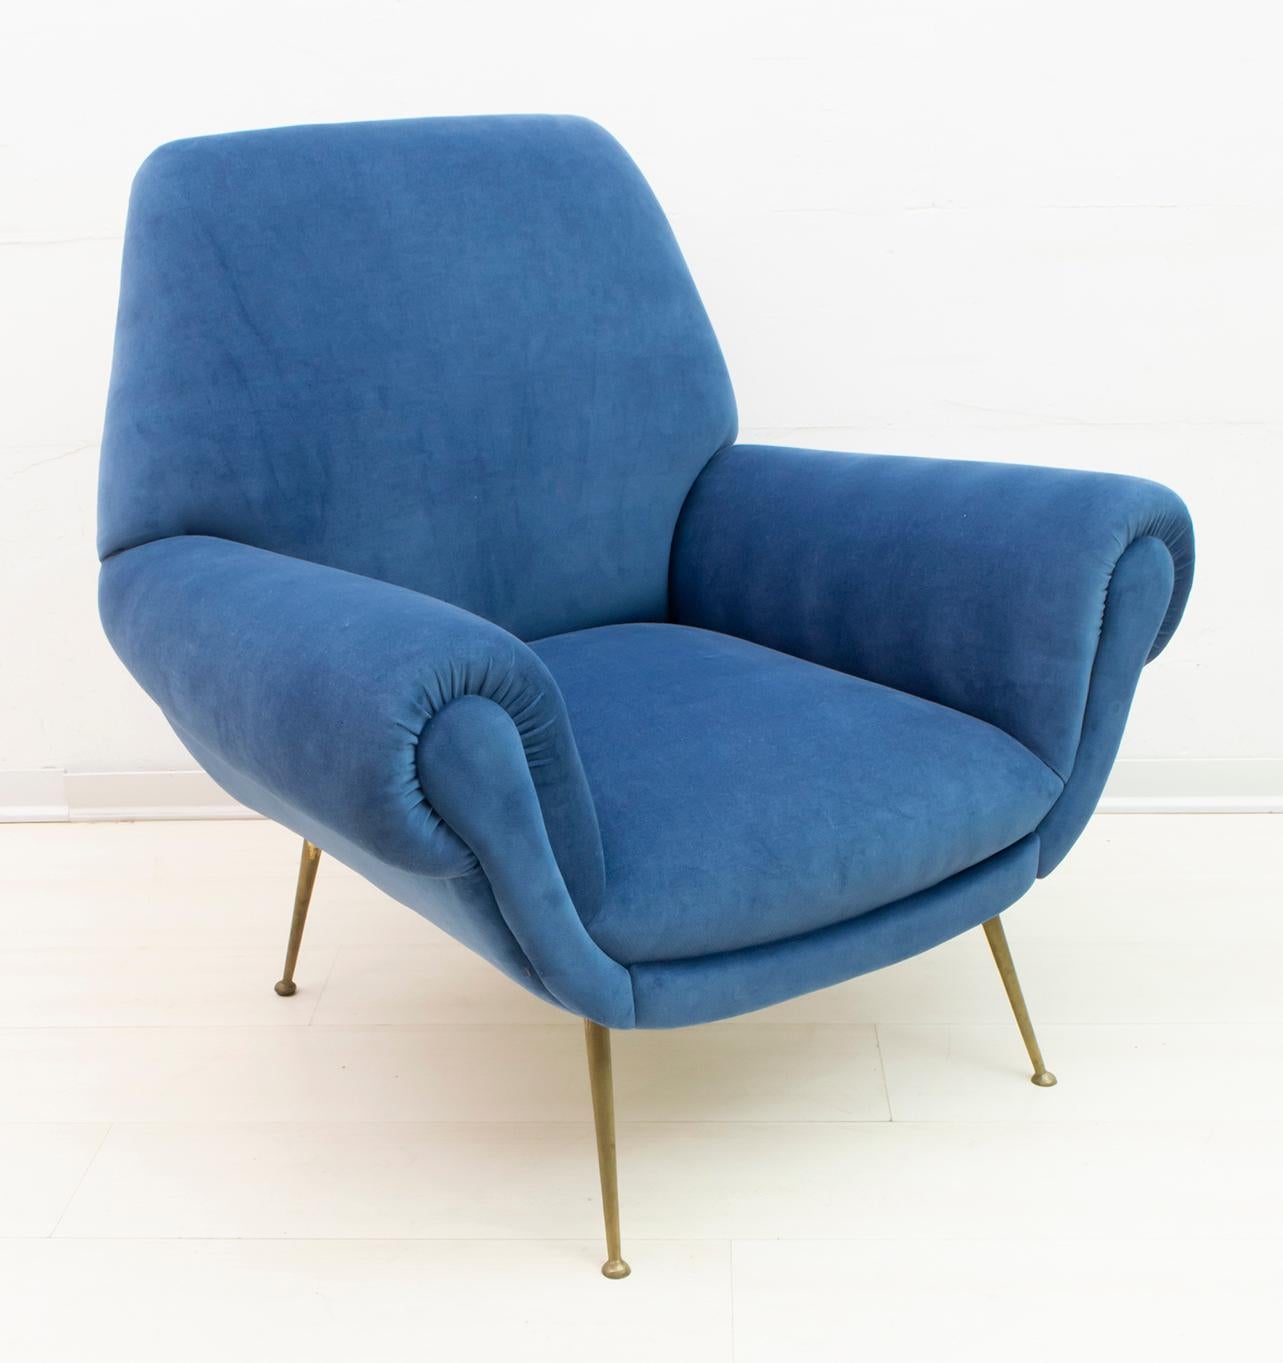 Mid-20th Century Gigi Radice Mid-Century Modern Italian Armchair for Minotti, 1950s